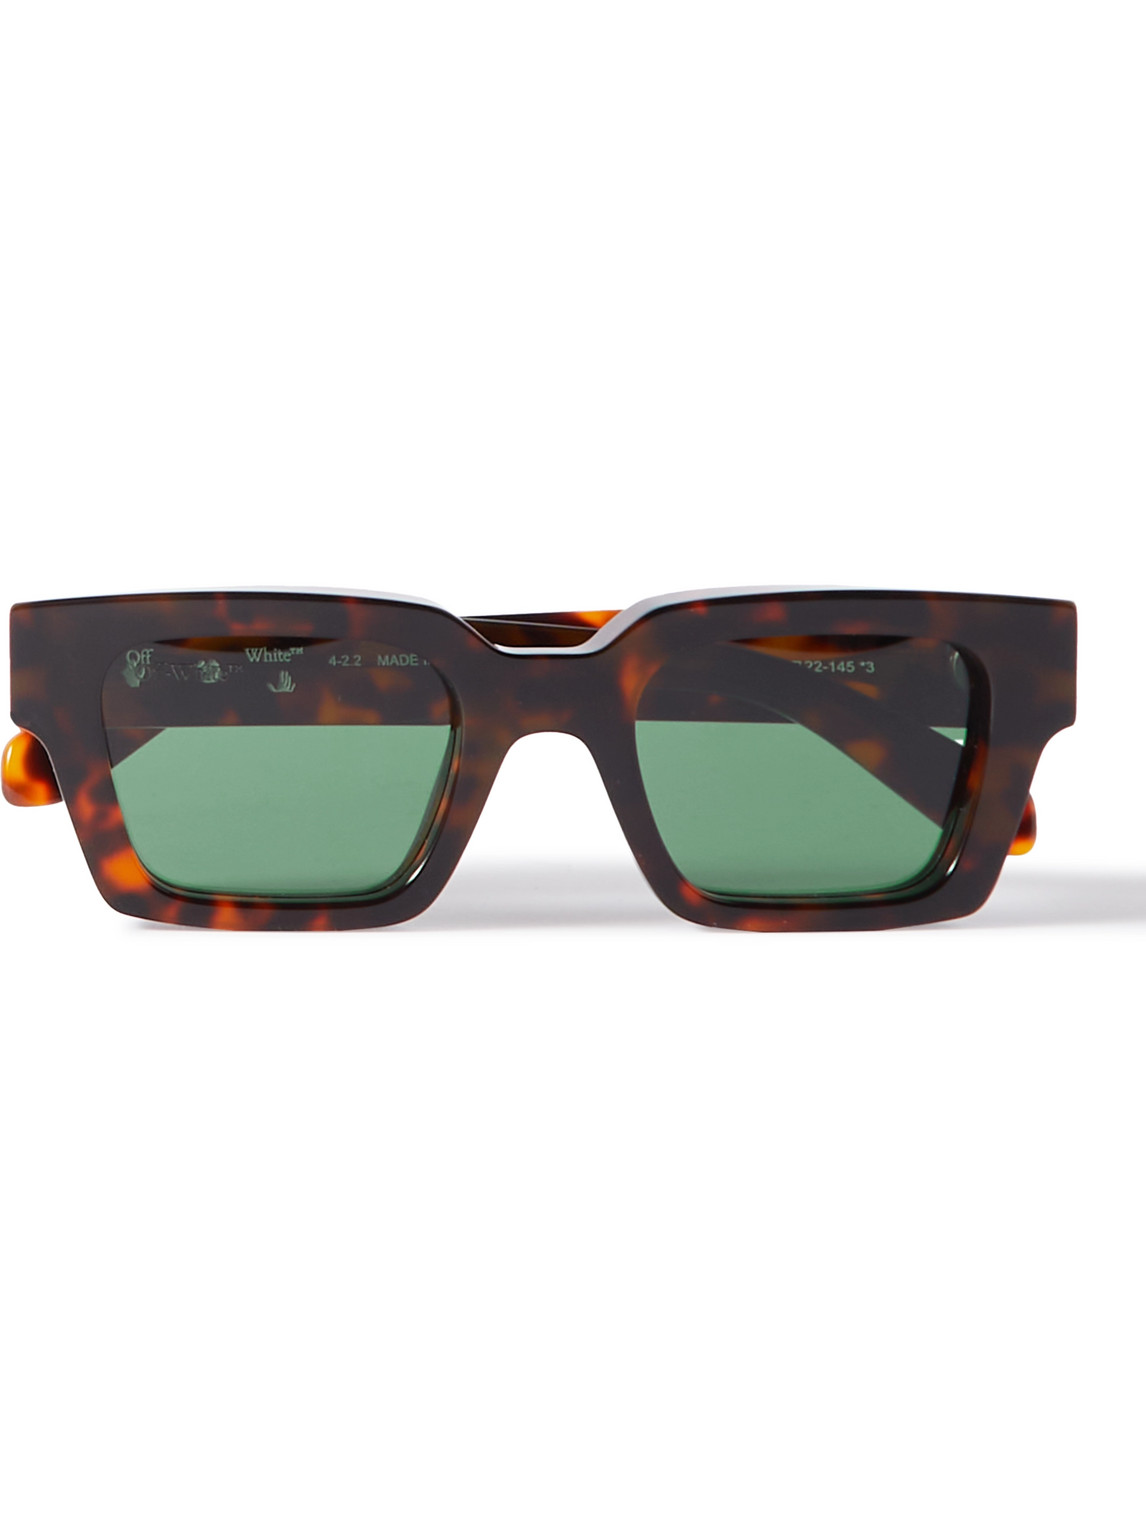 Off-White - Virgil Square-Frame Tortoiseshell Acetate Sunglasses - Men - Brown von Off-White